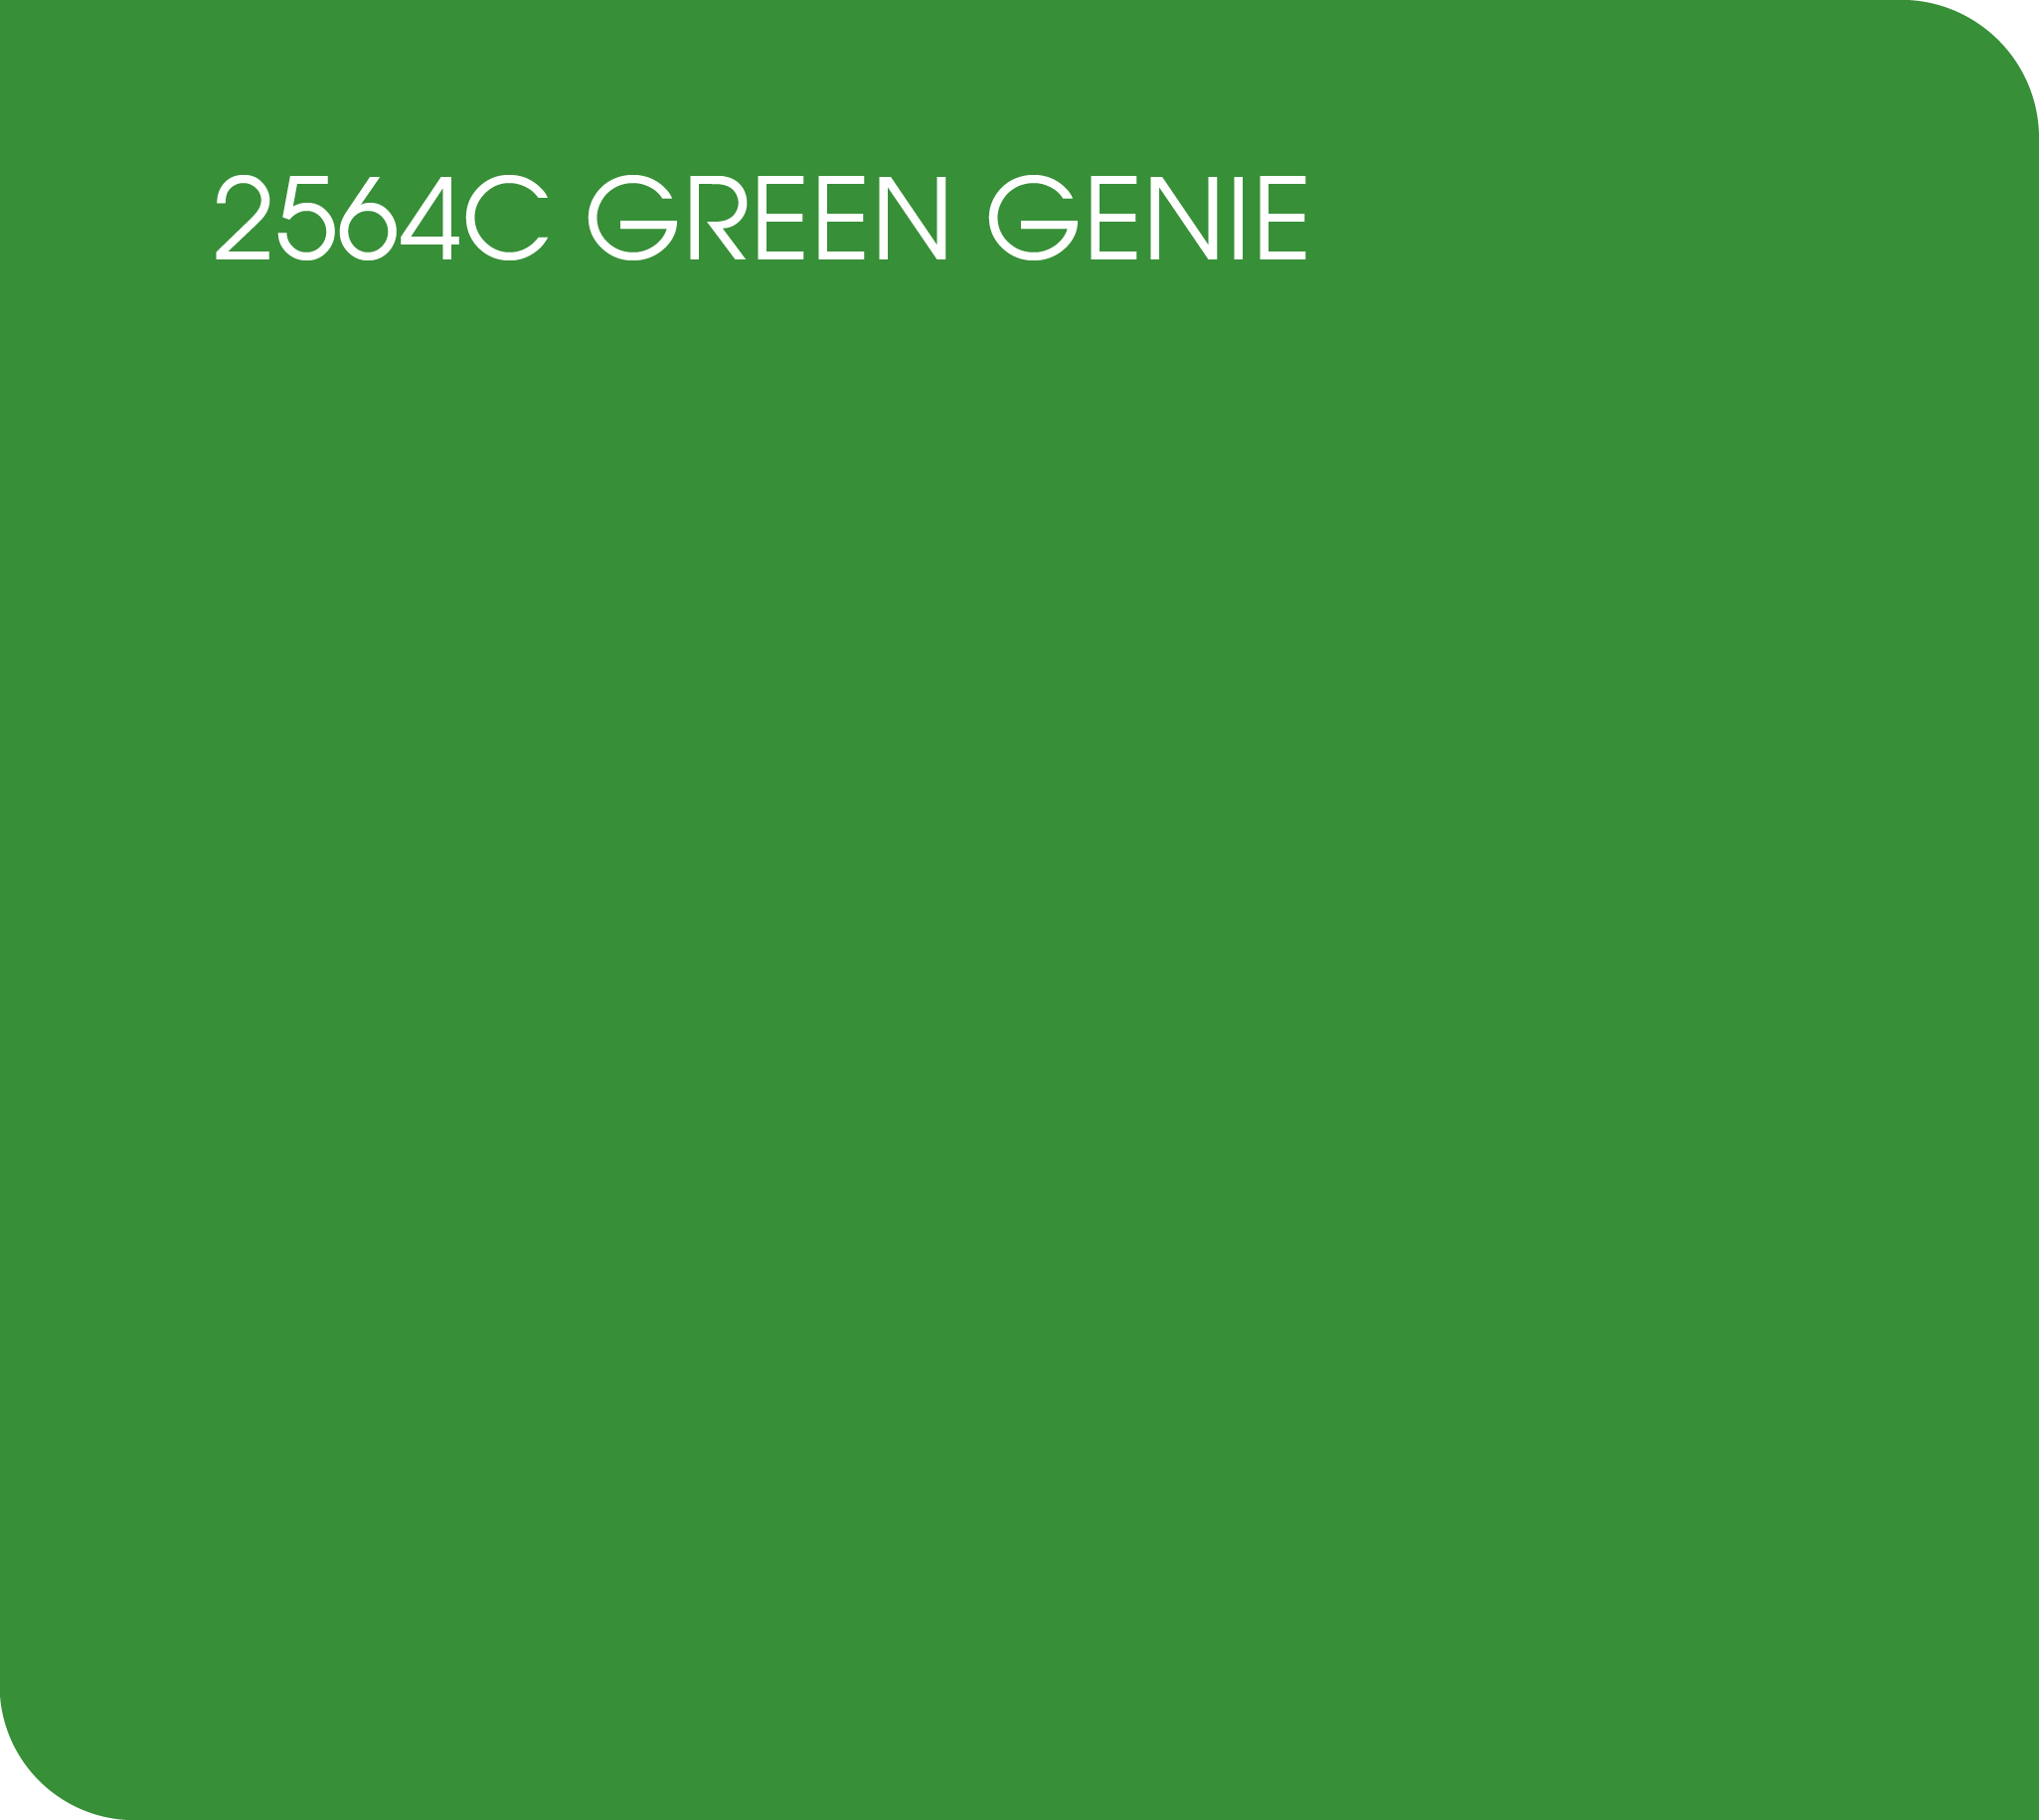 2564C green genie